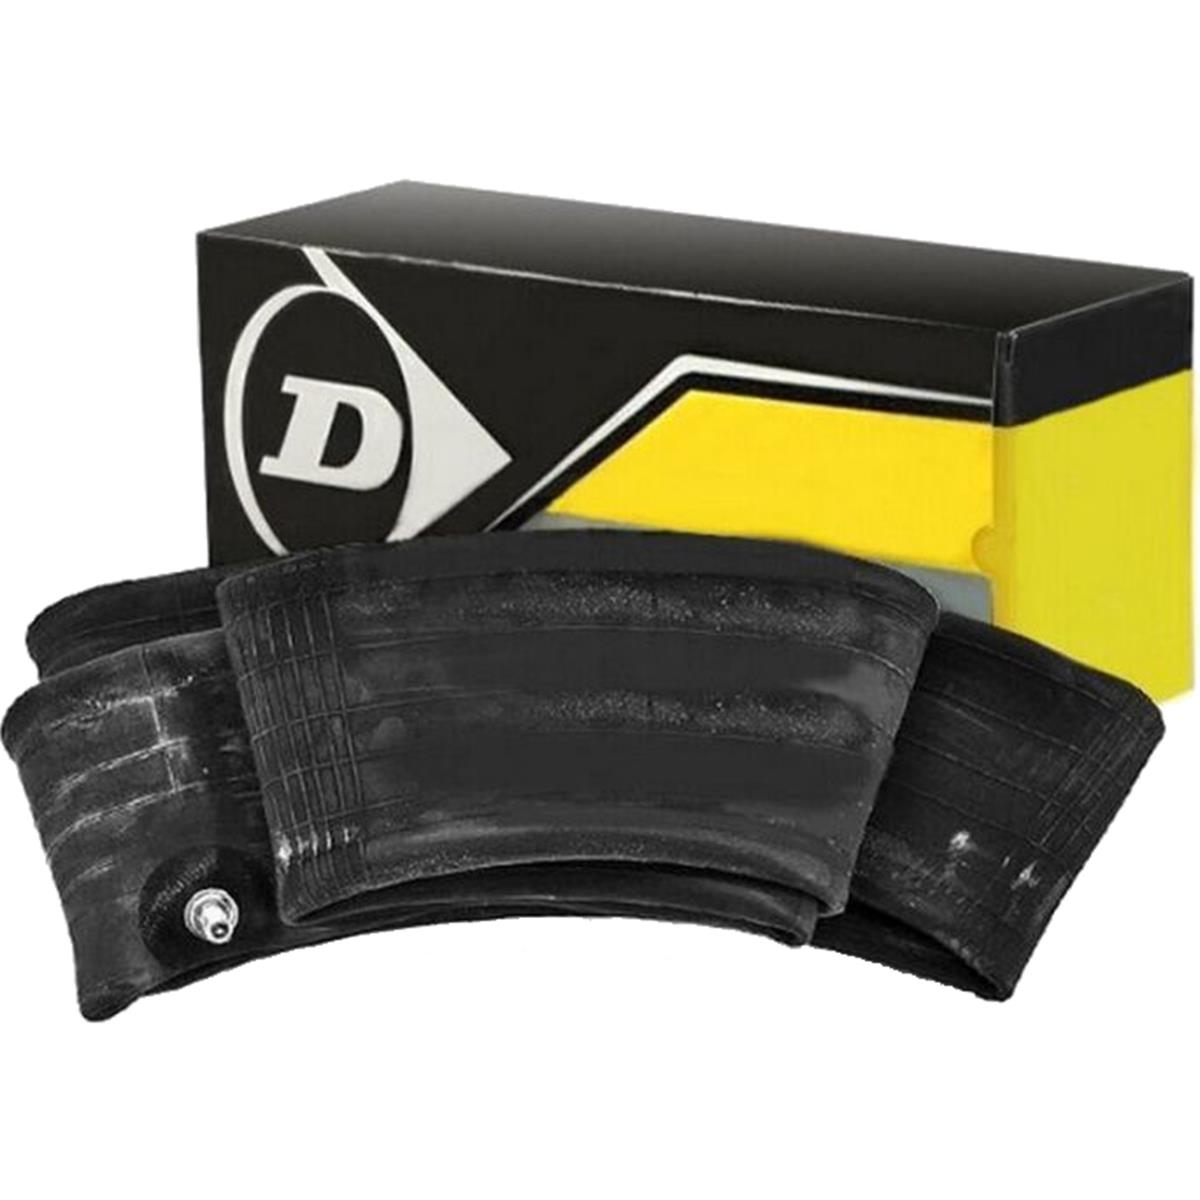 Dunlop Tube  2.75-21, 3.00-21, 70:90/100-21, TR4 MOT